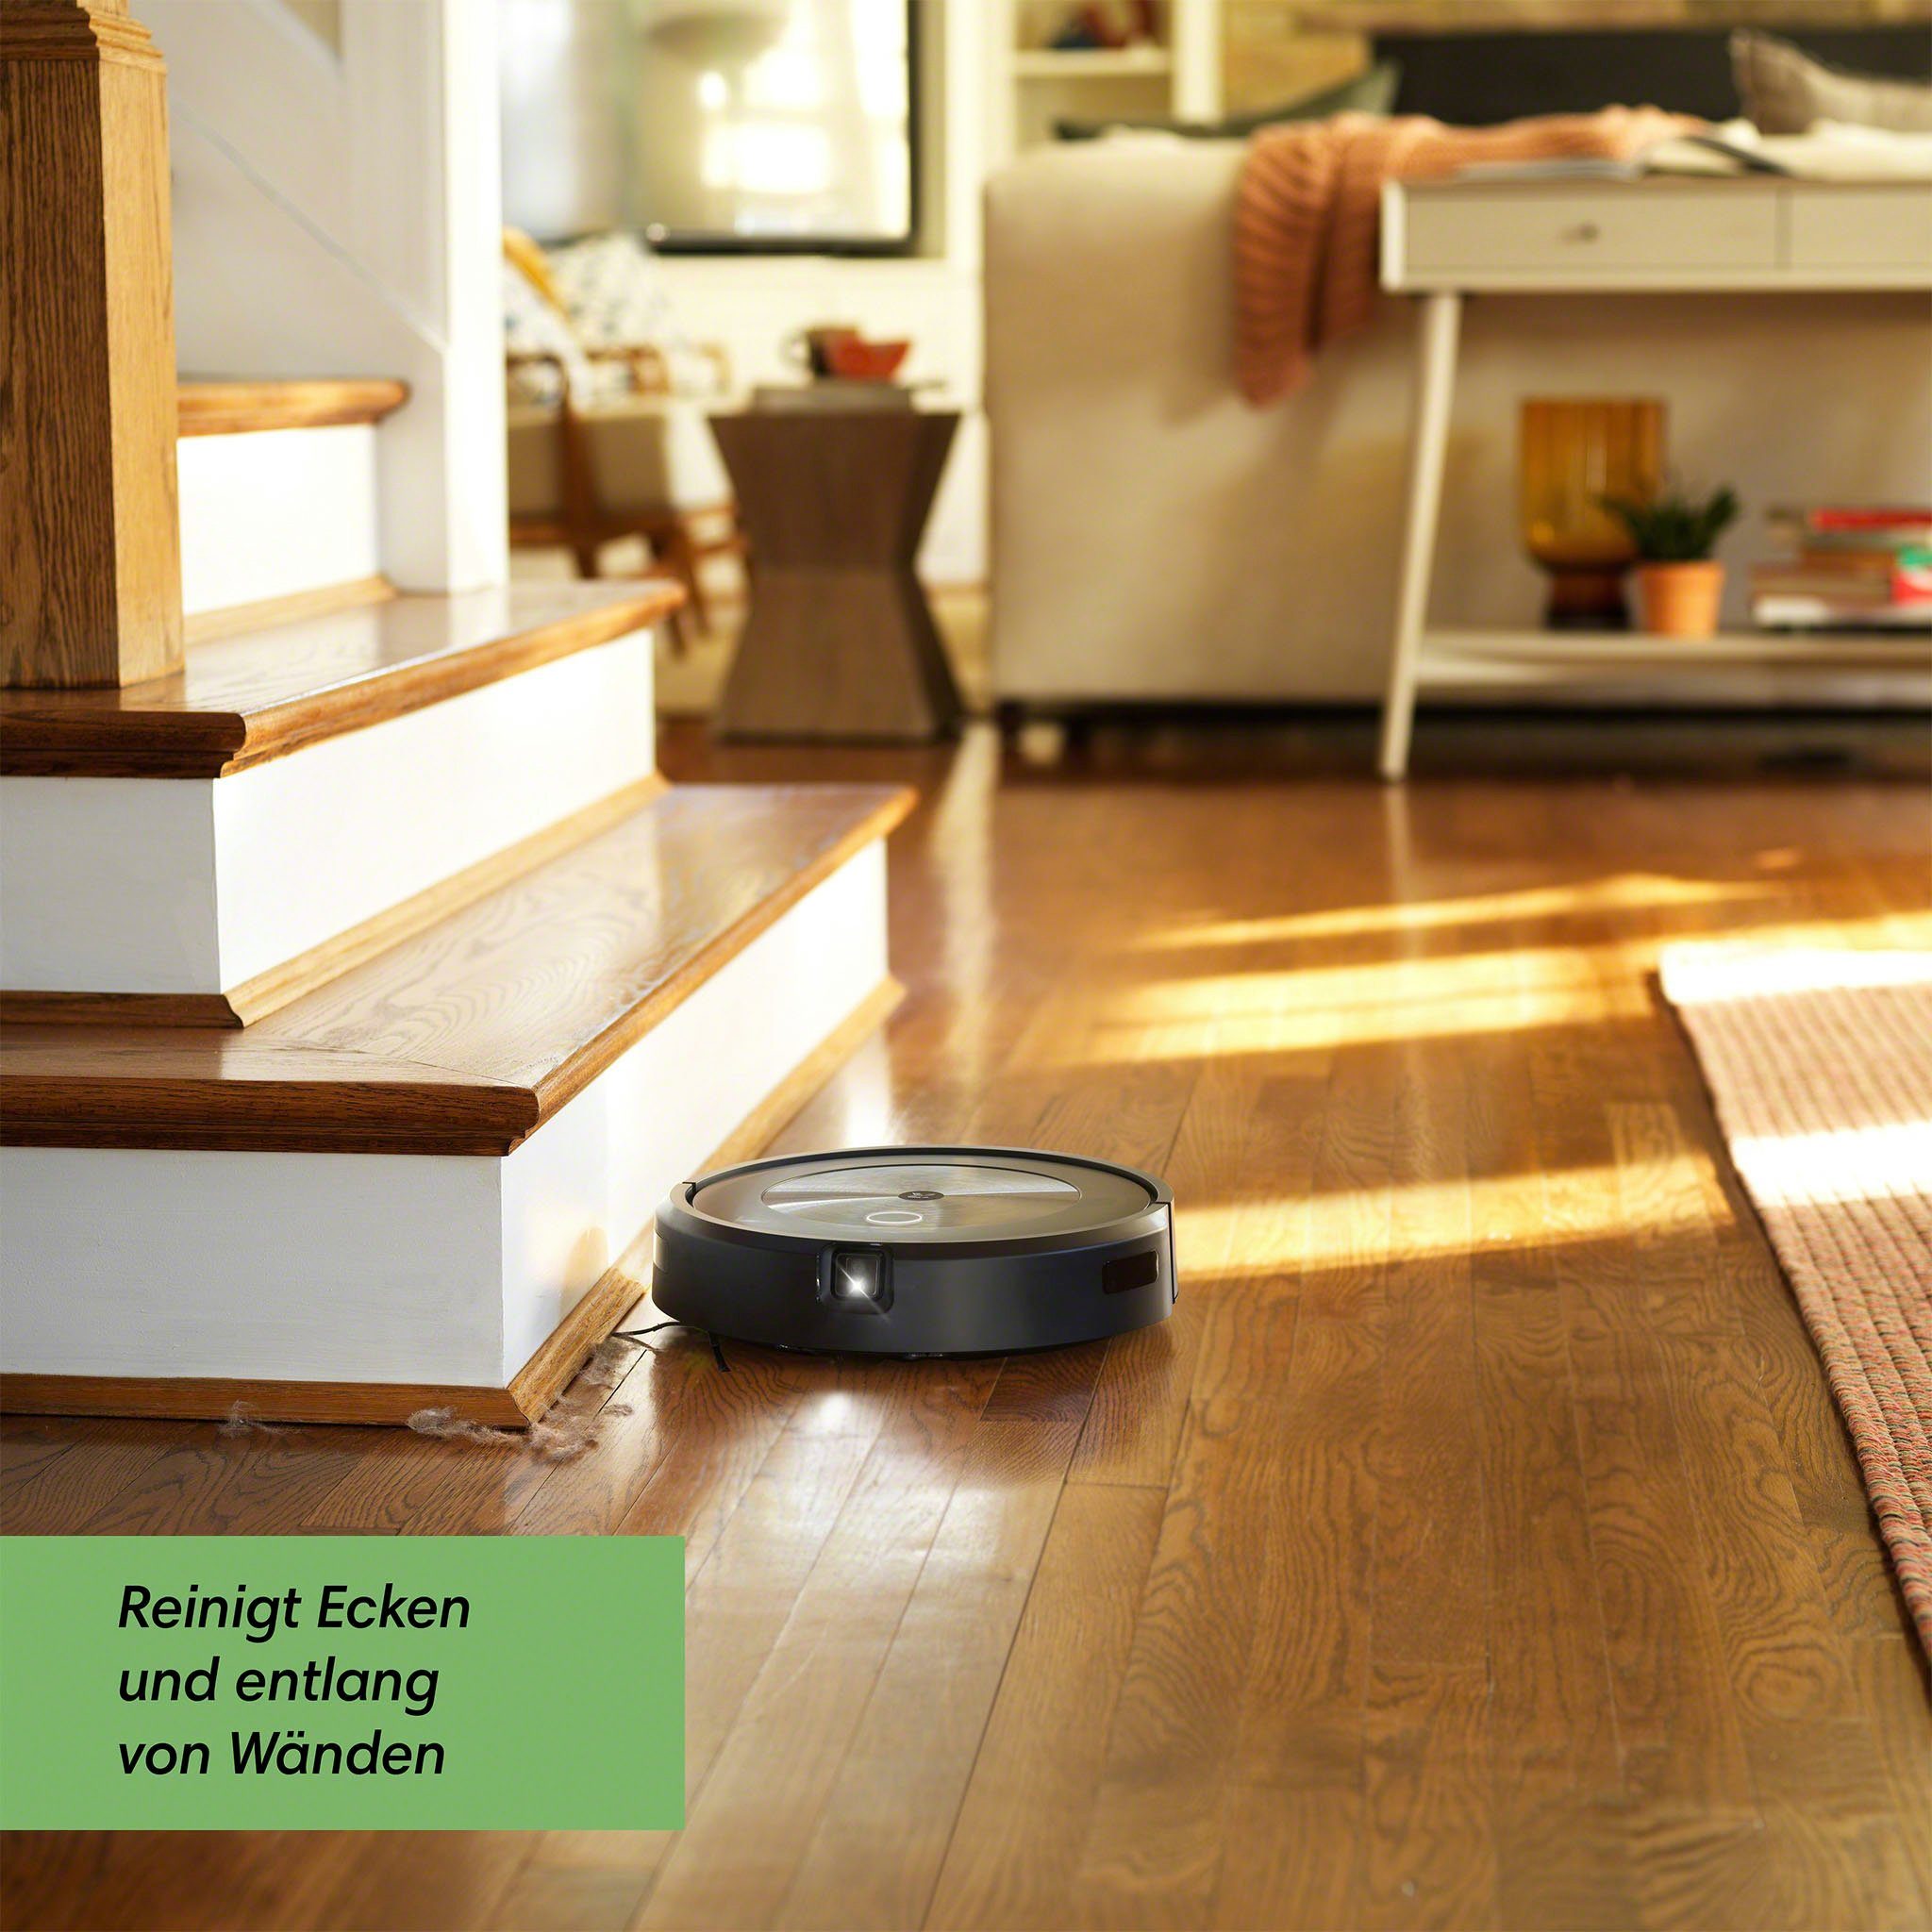 Kartierung, beutellos, (j7158), Roomba® iRobot j7 Saugroboter WLAN-fähig, Objekterkennung